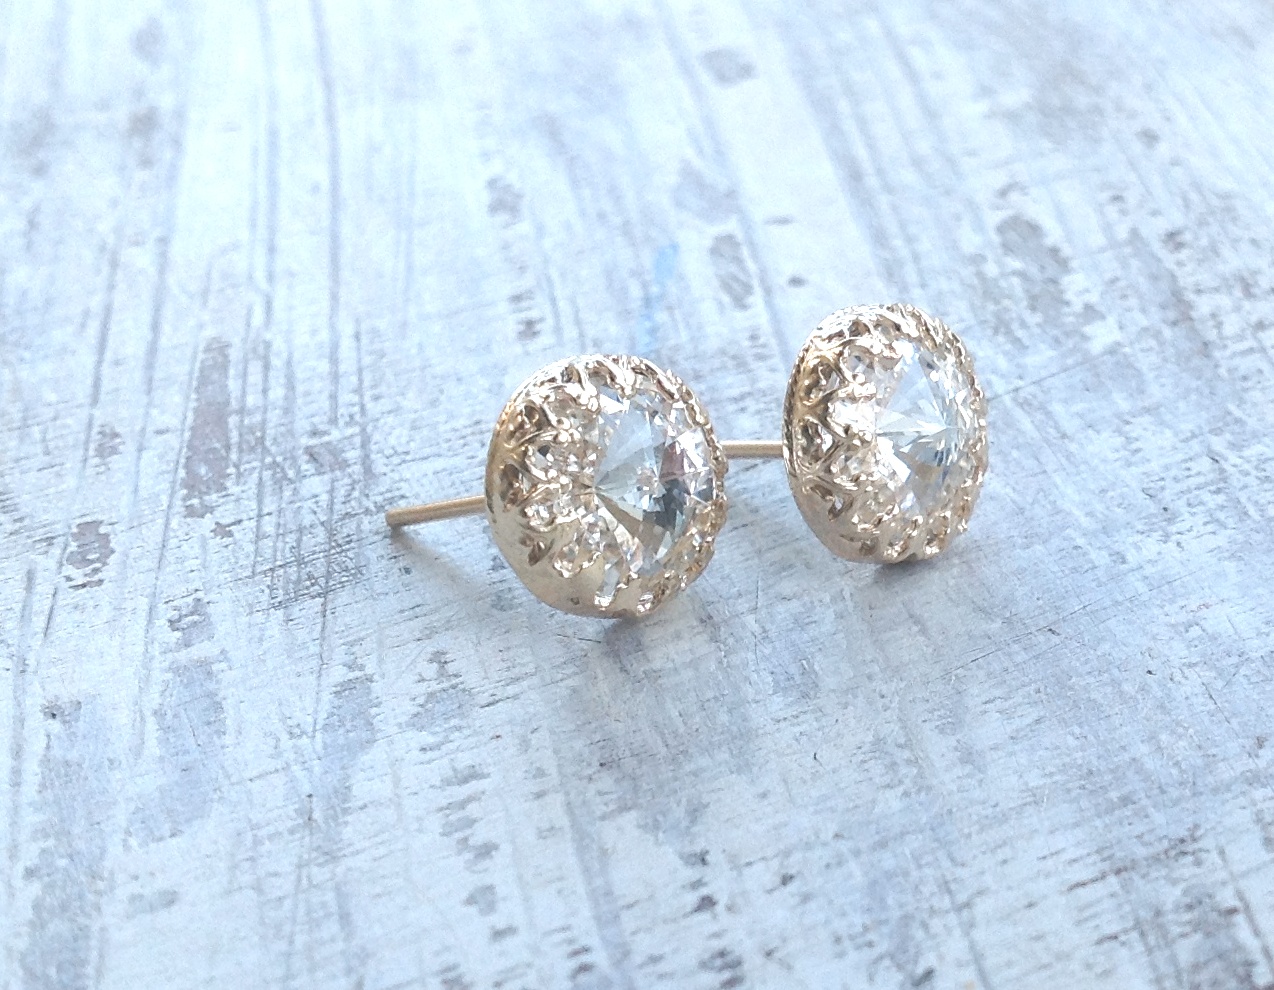 Gold earrings, crystal stud earrings, stud earrings, classic earrings, wedding earrings, Gold filled earrings - 6100